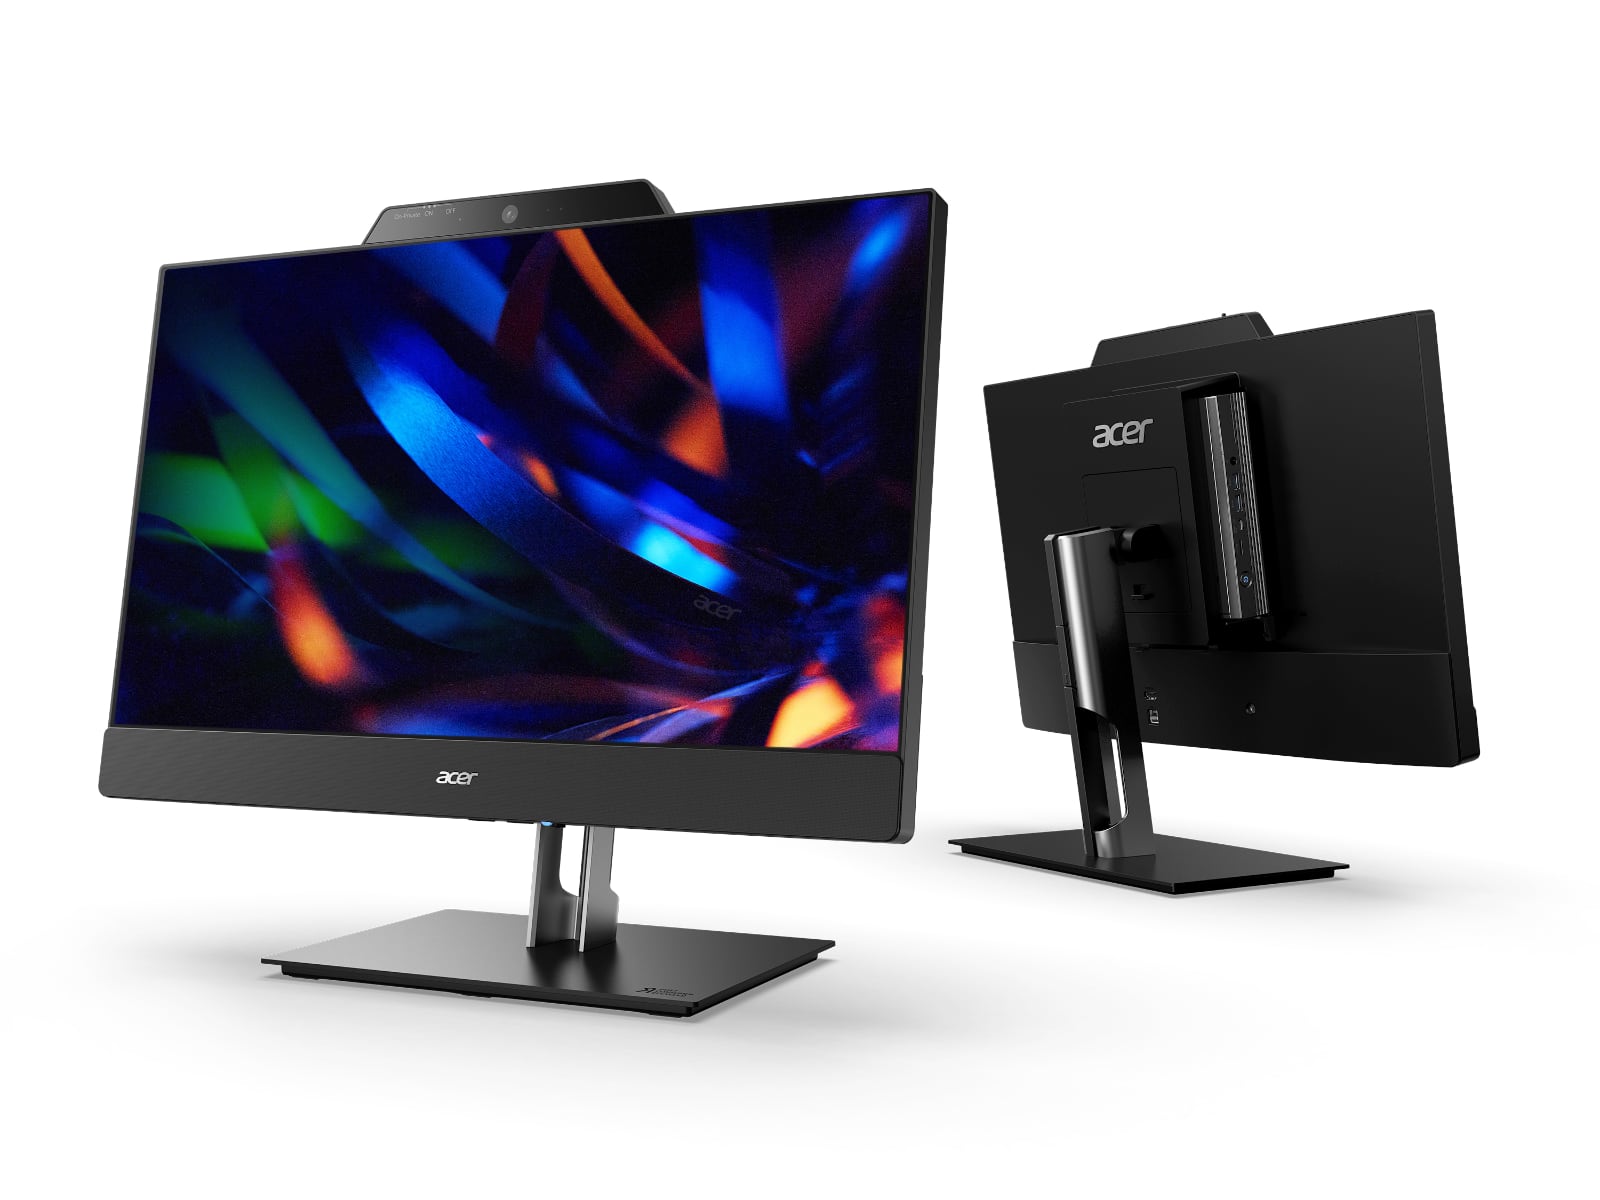 Acer dodaje 24-calowy monitor FHD 1080p do wszystkich nowych urządzeń Chromebox CXI5 i stworzył rozwiązanie Add-In-One 24 za 610 dolarów-3